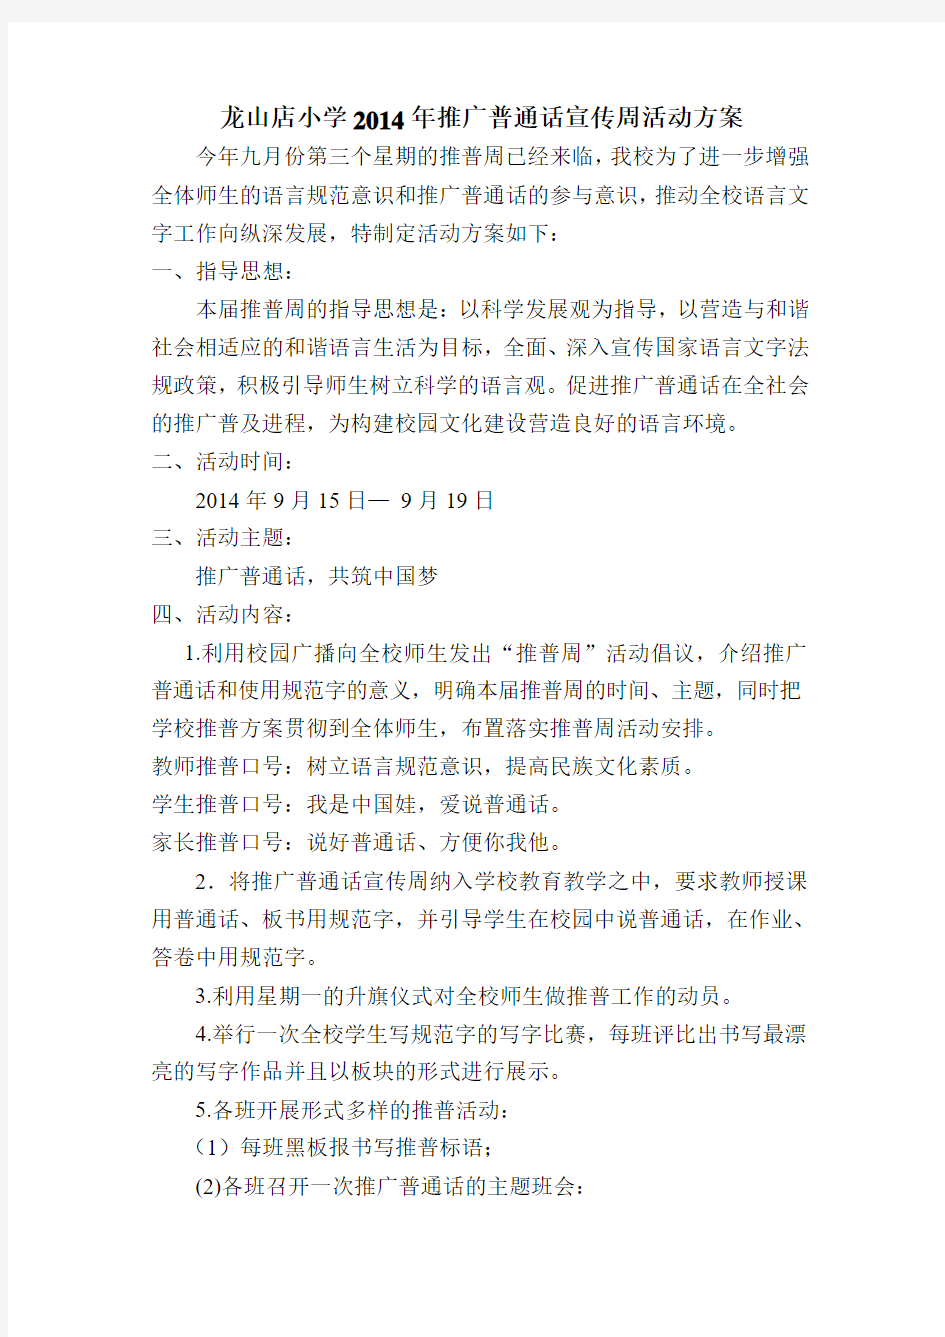 龙山店小学2014年推广普通话宣传周活动方案